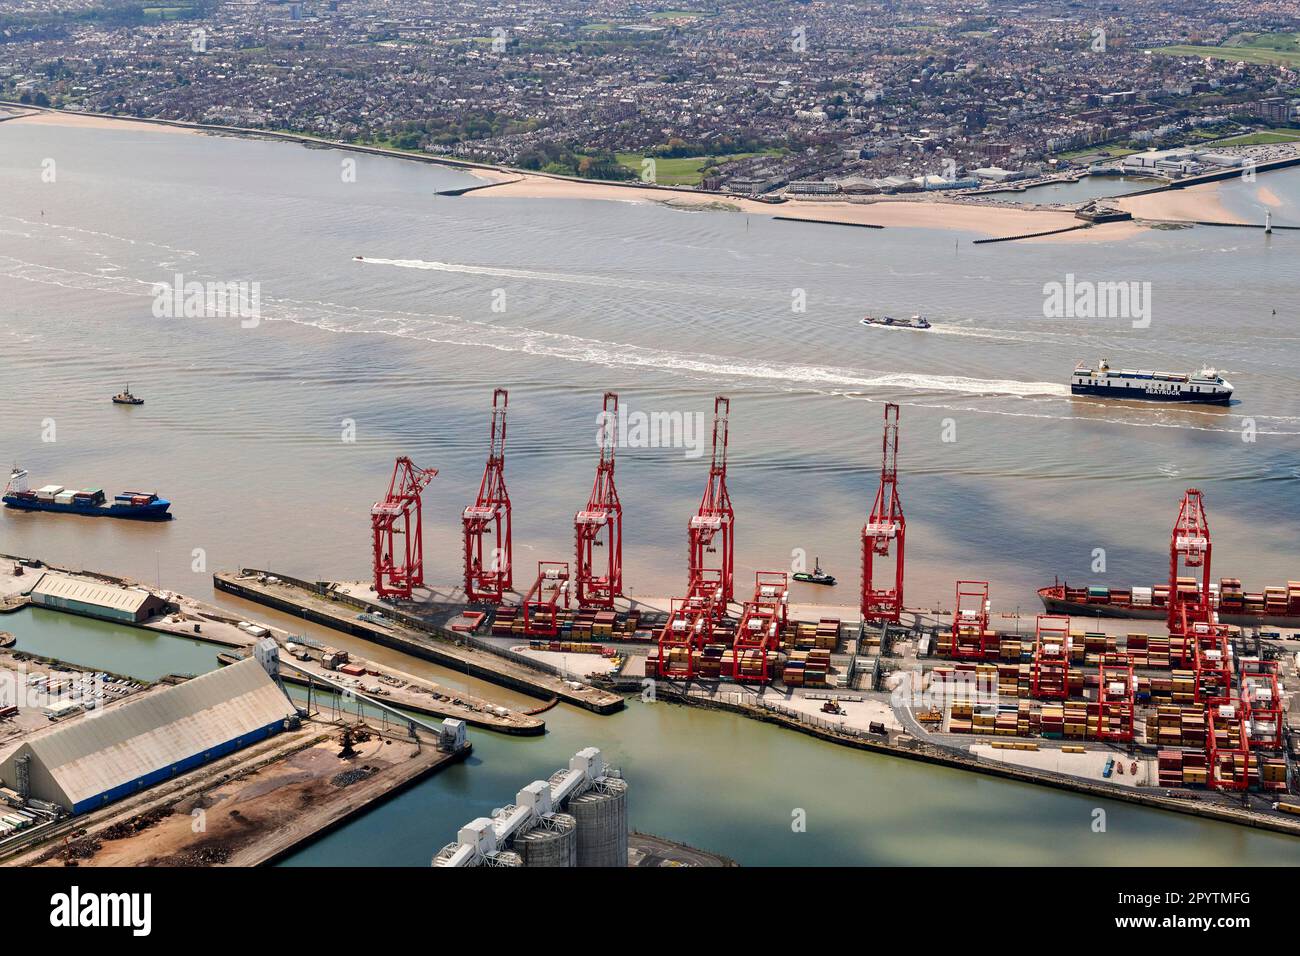 Containerschiff entladen am Peel Port, Seaforth Docks, Merseyside, an der Flussmündung von Mersey, Liverpool, Nordwestengland, Großbritannien Stockfoto